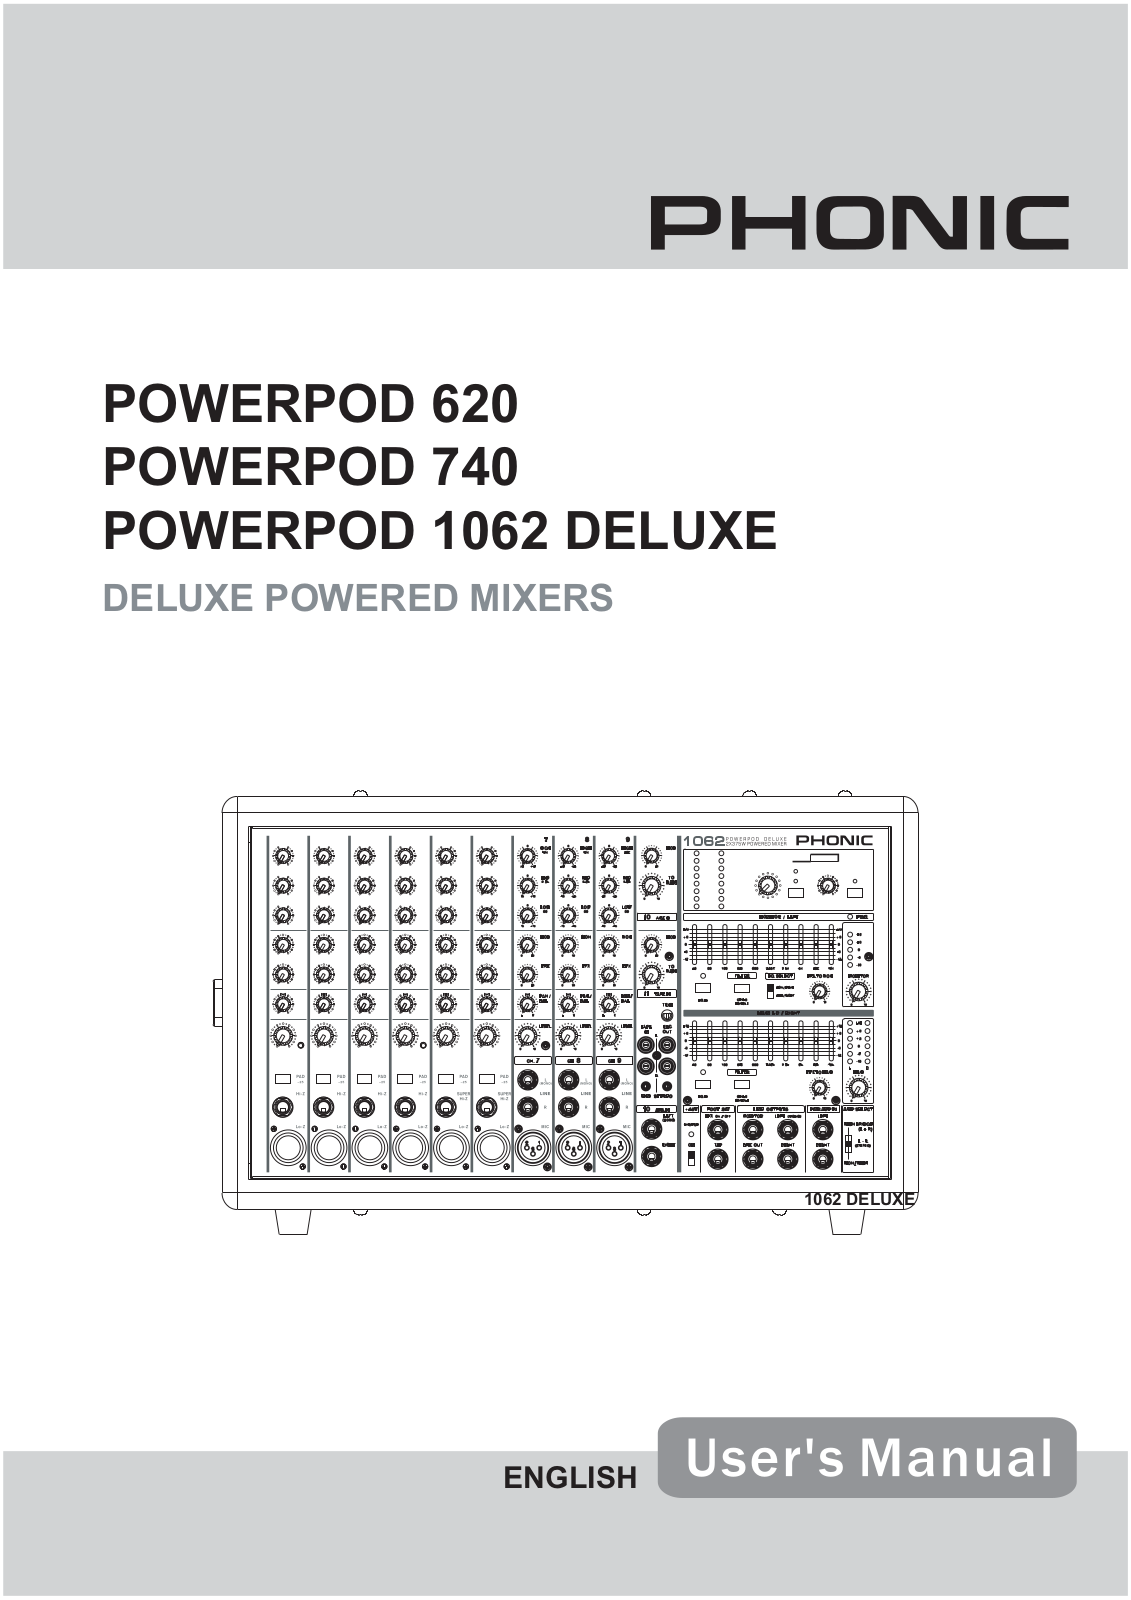 Phonic POWERPOD 1062 DELUXE, POWERPOD 740 Manual